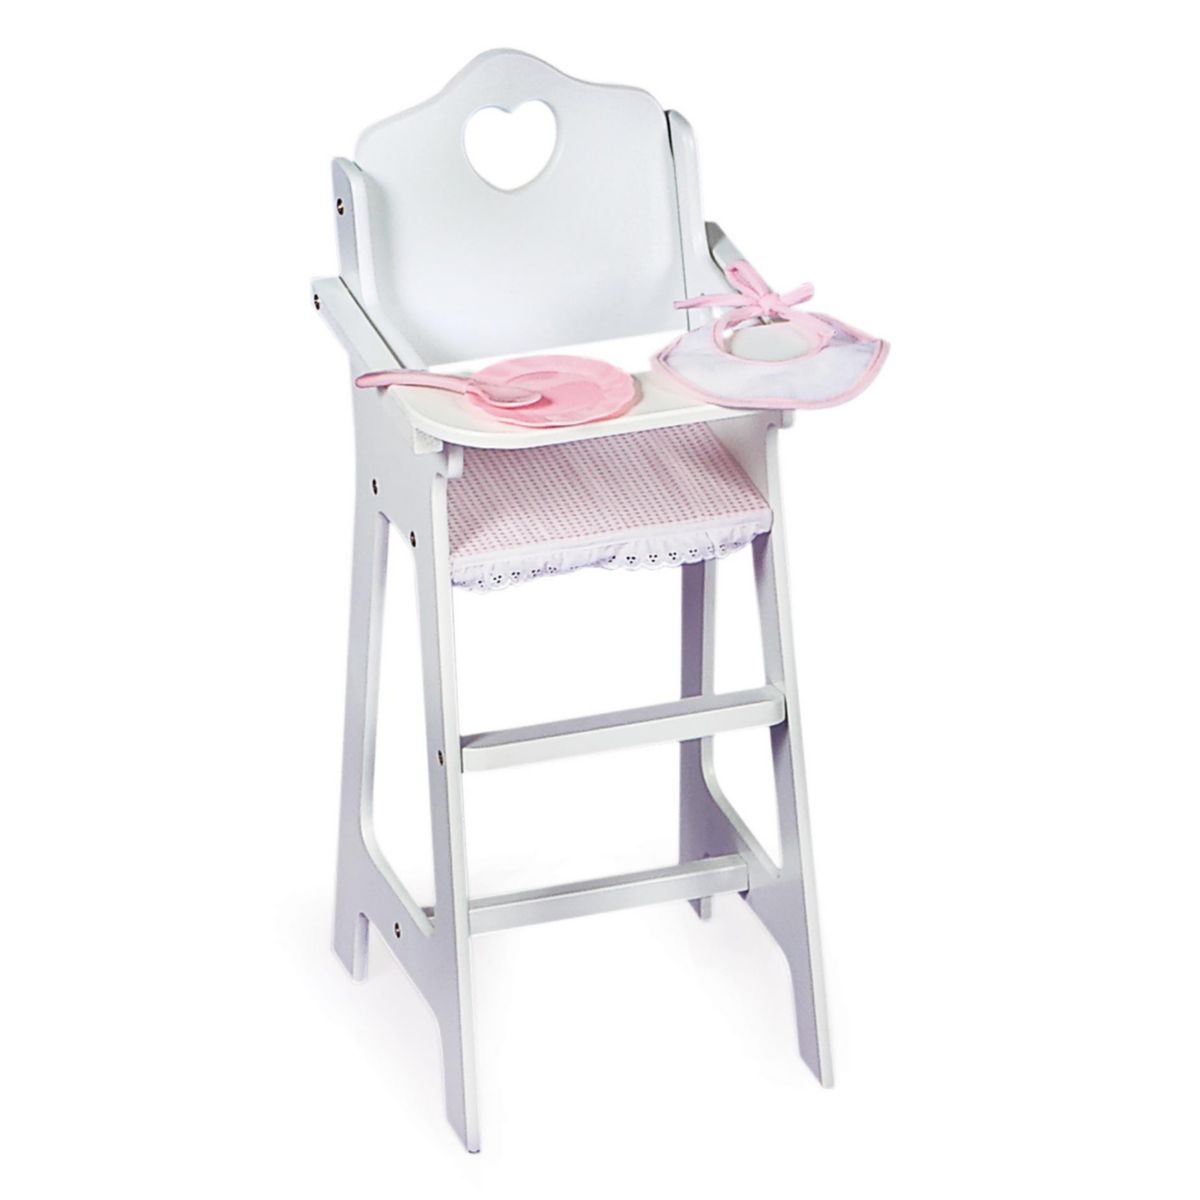 Doll High Chair стульчик для кормления